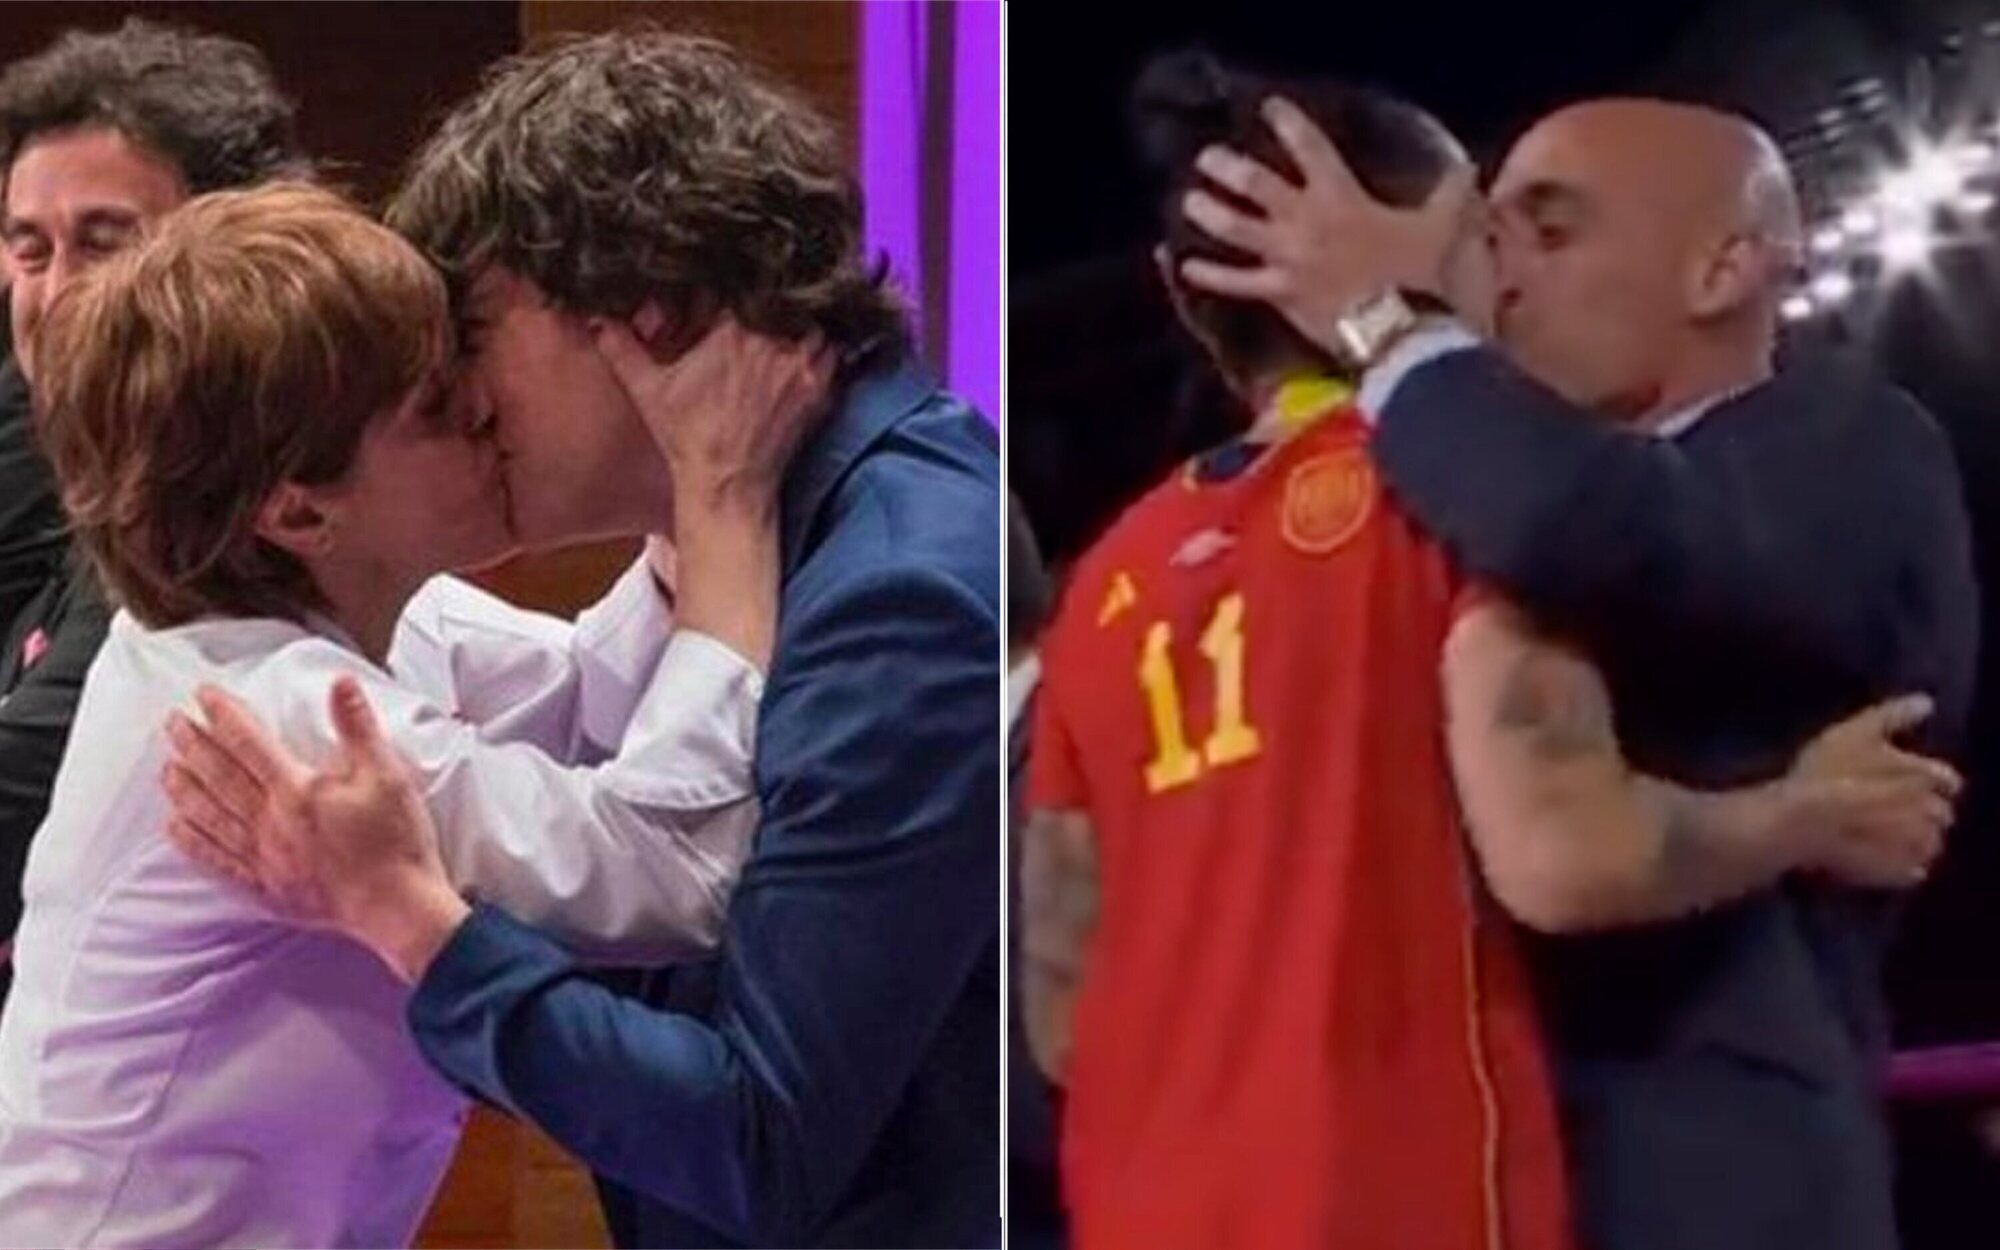 Las redes rescatan el beso de Anabel Alonso a Jordi Cruz tras el de Rubiales a Hermoso. ¿Son casos comparables?